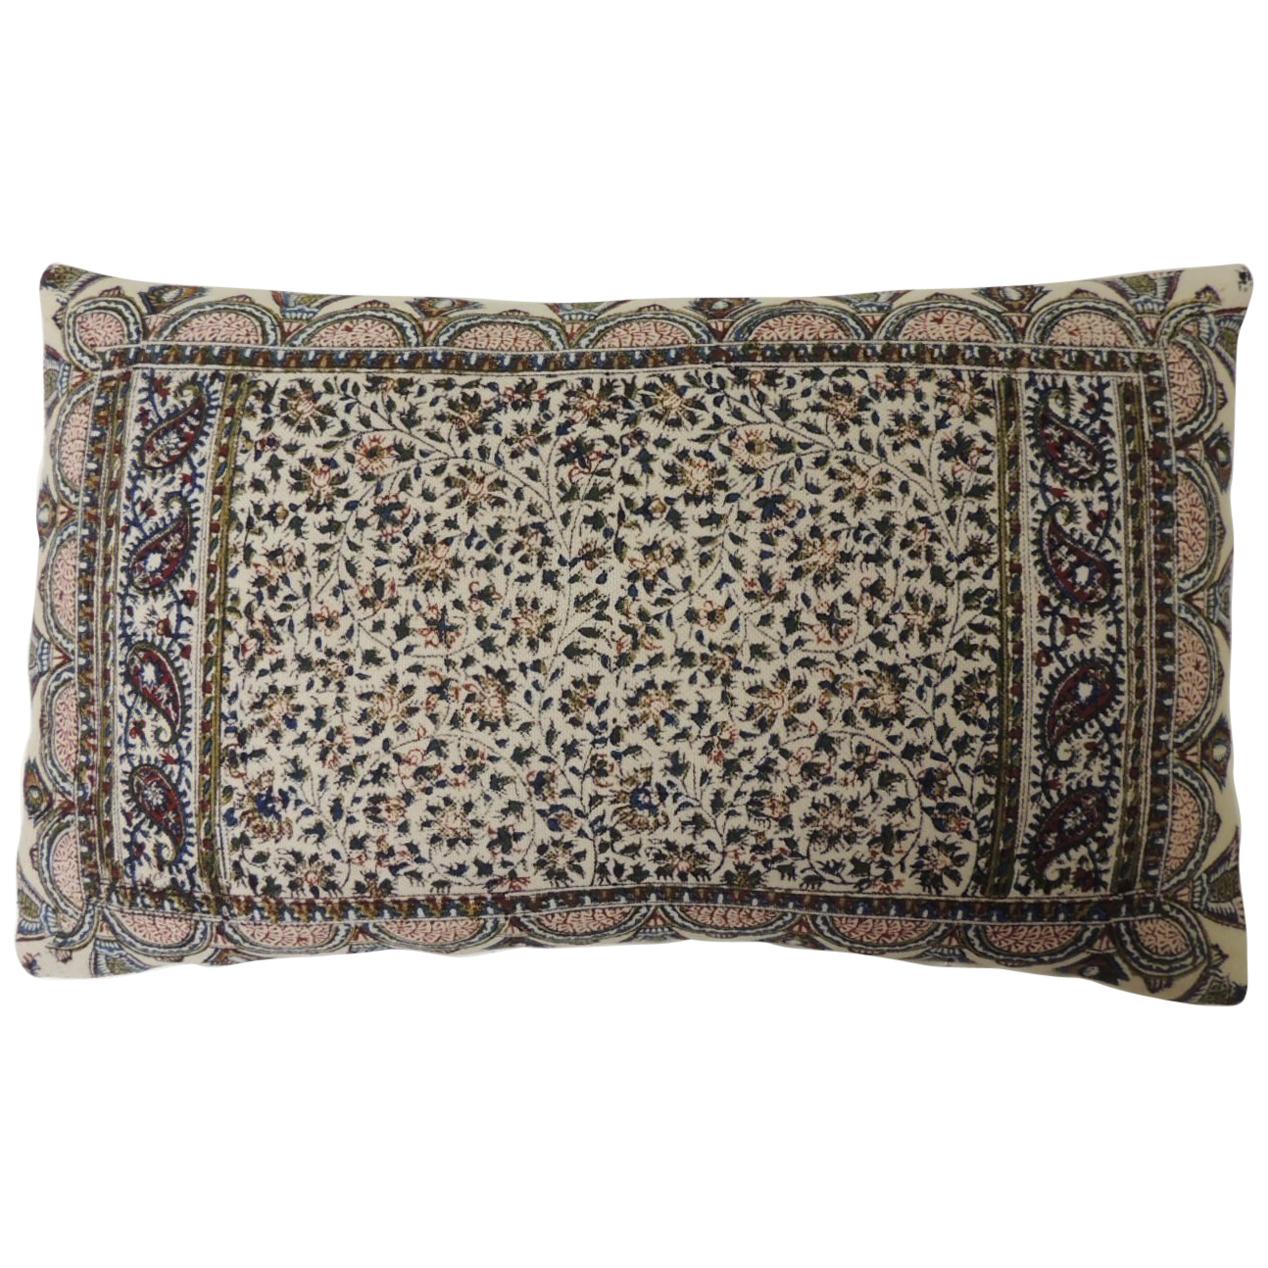 Vintage Hand-Blocked Kalamkari Lumbar Decorative Throw Pillow